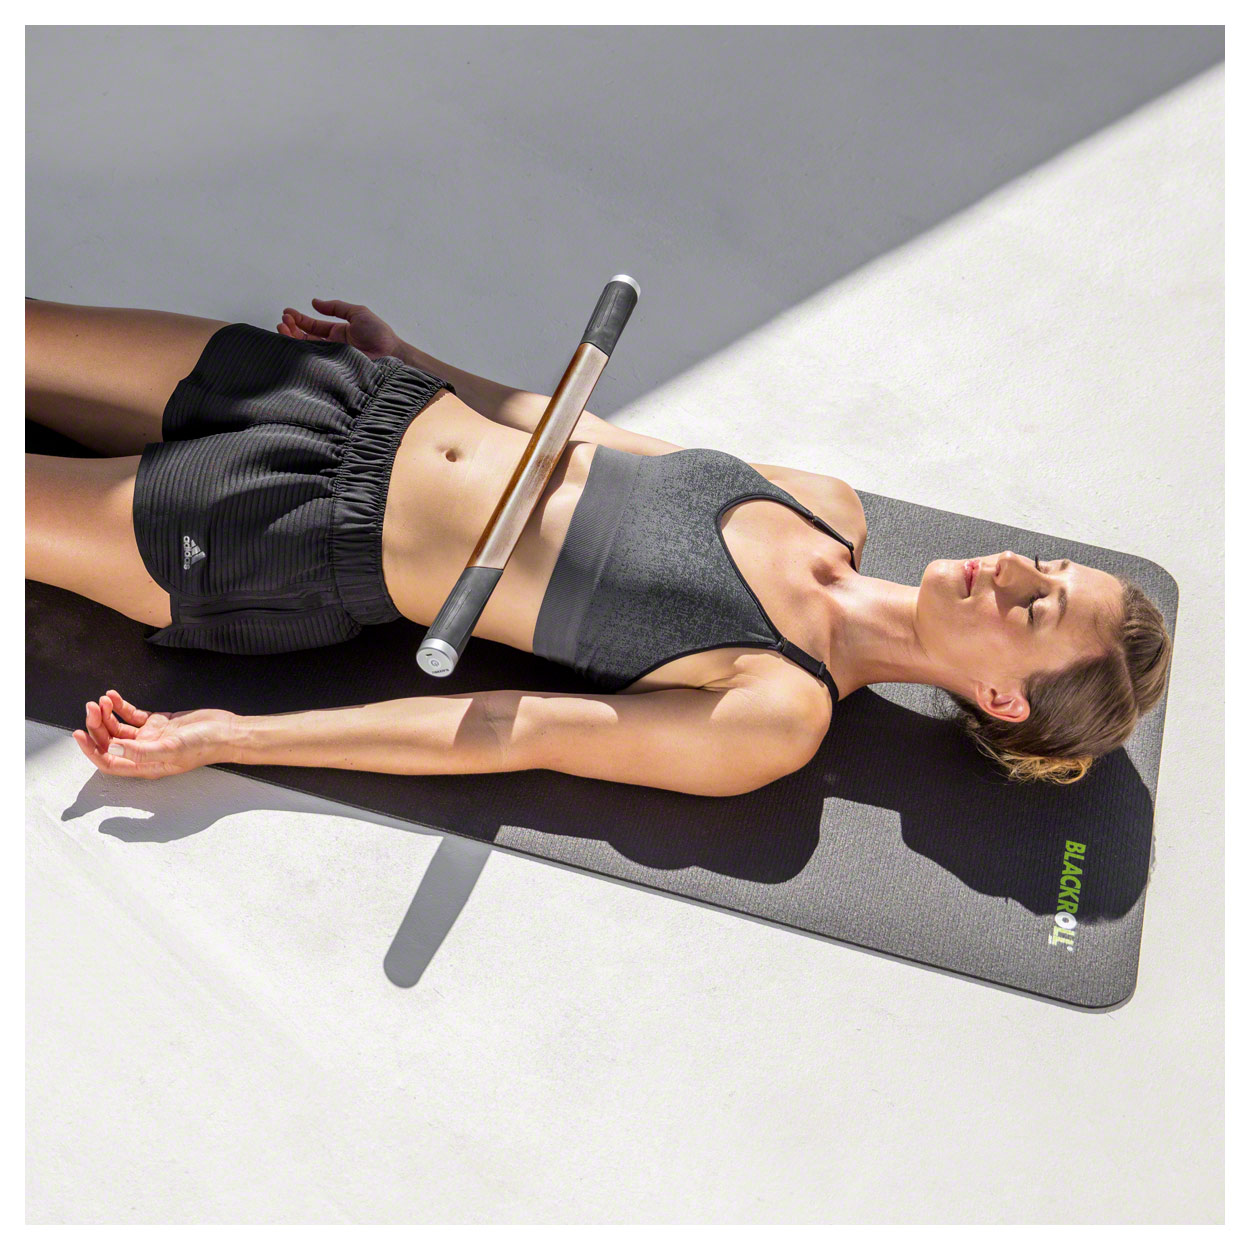 Blackroll Massagestab ReleaZer Faszien Selbstmassage Massagegerät 60x3,7x5 cm 